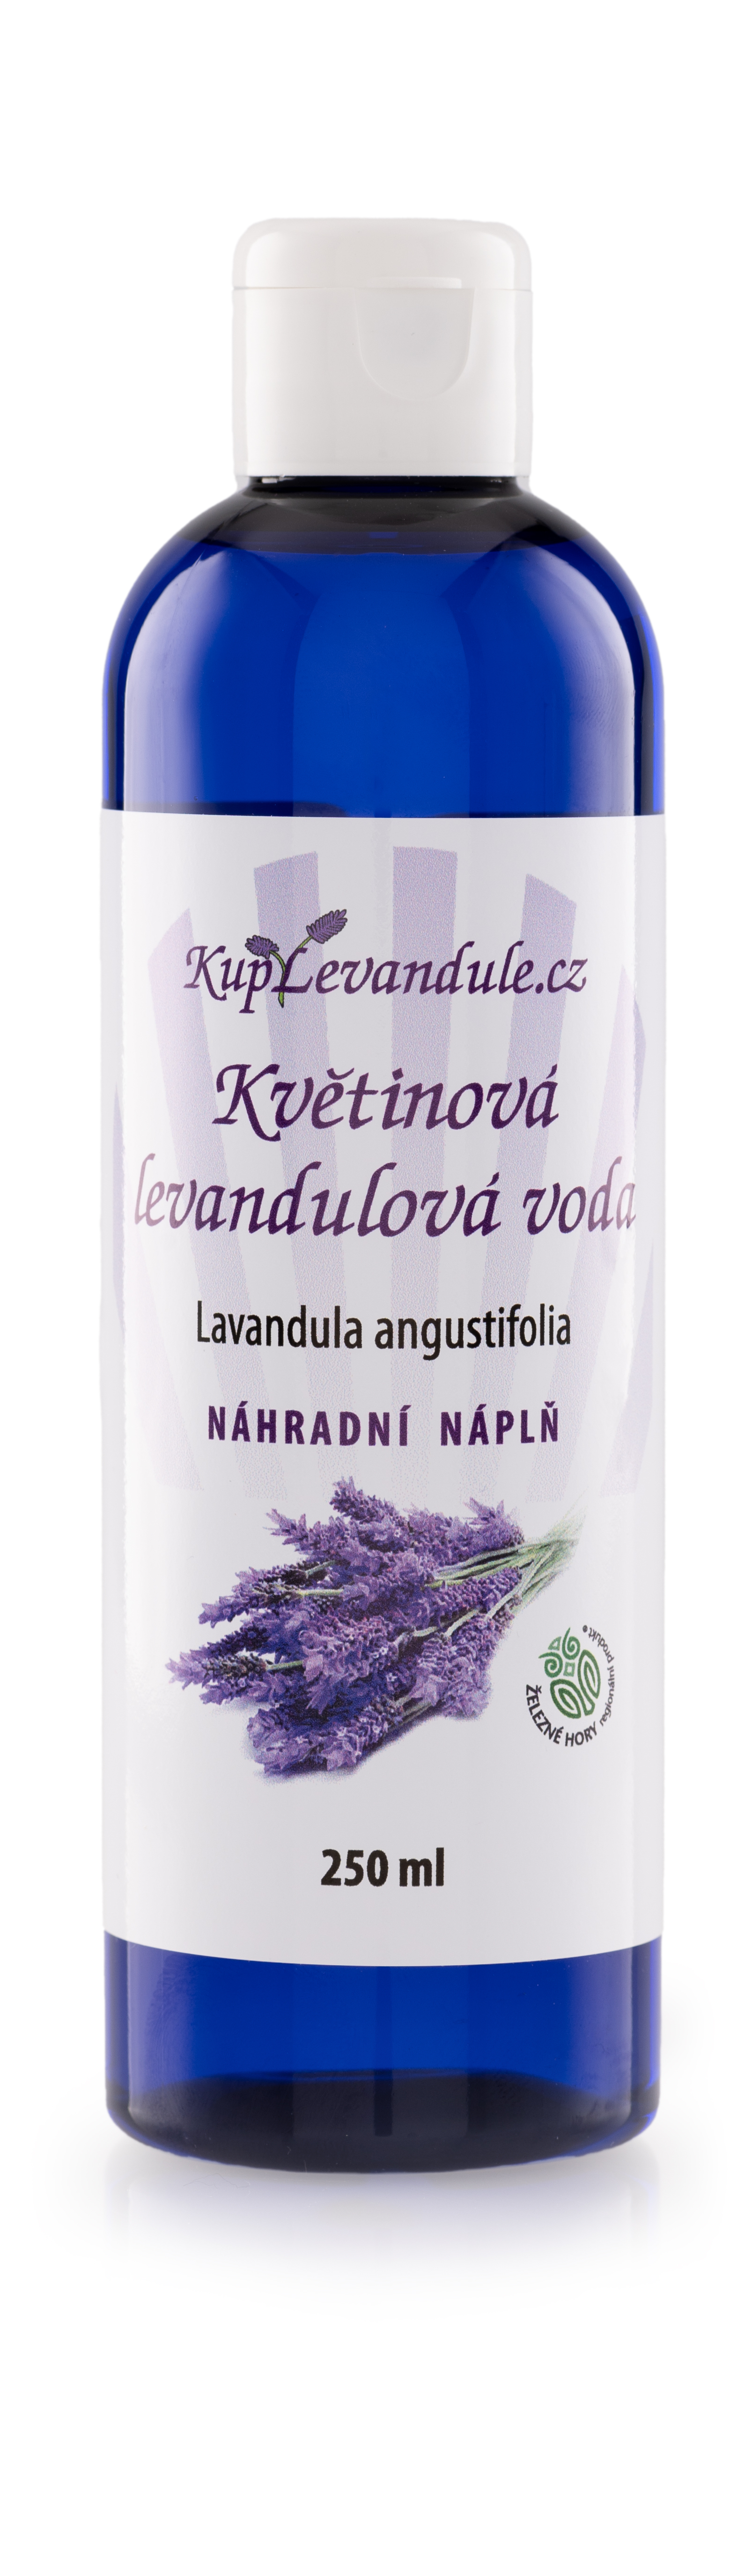 KupLevandule Květinová levandulová voda - náhradní náplň 250 ml